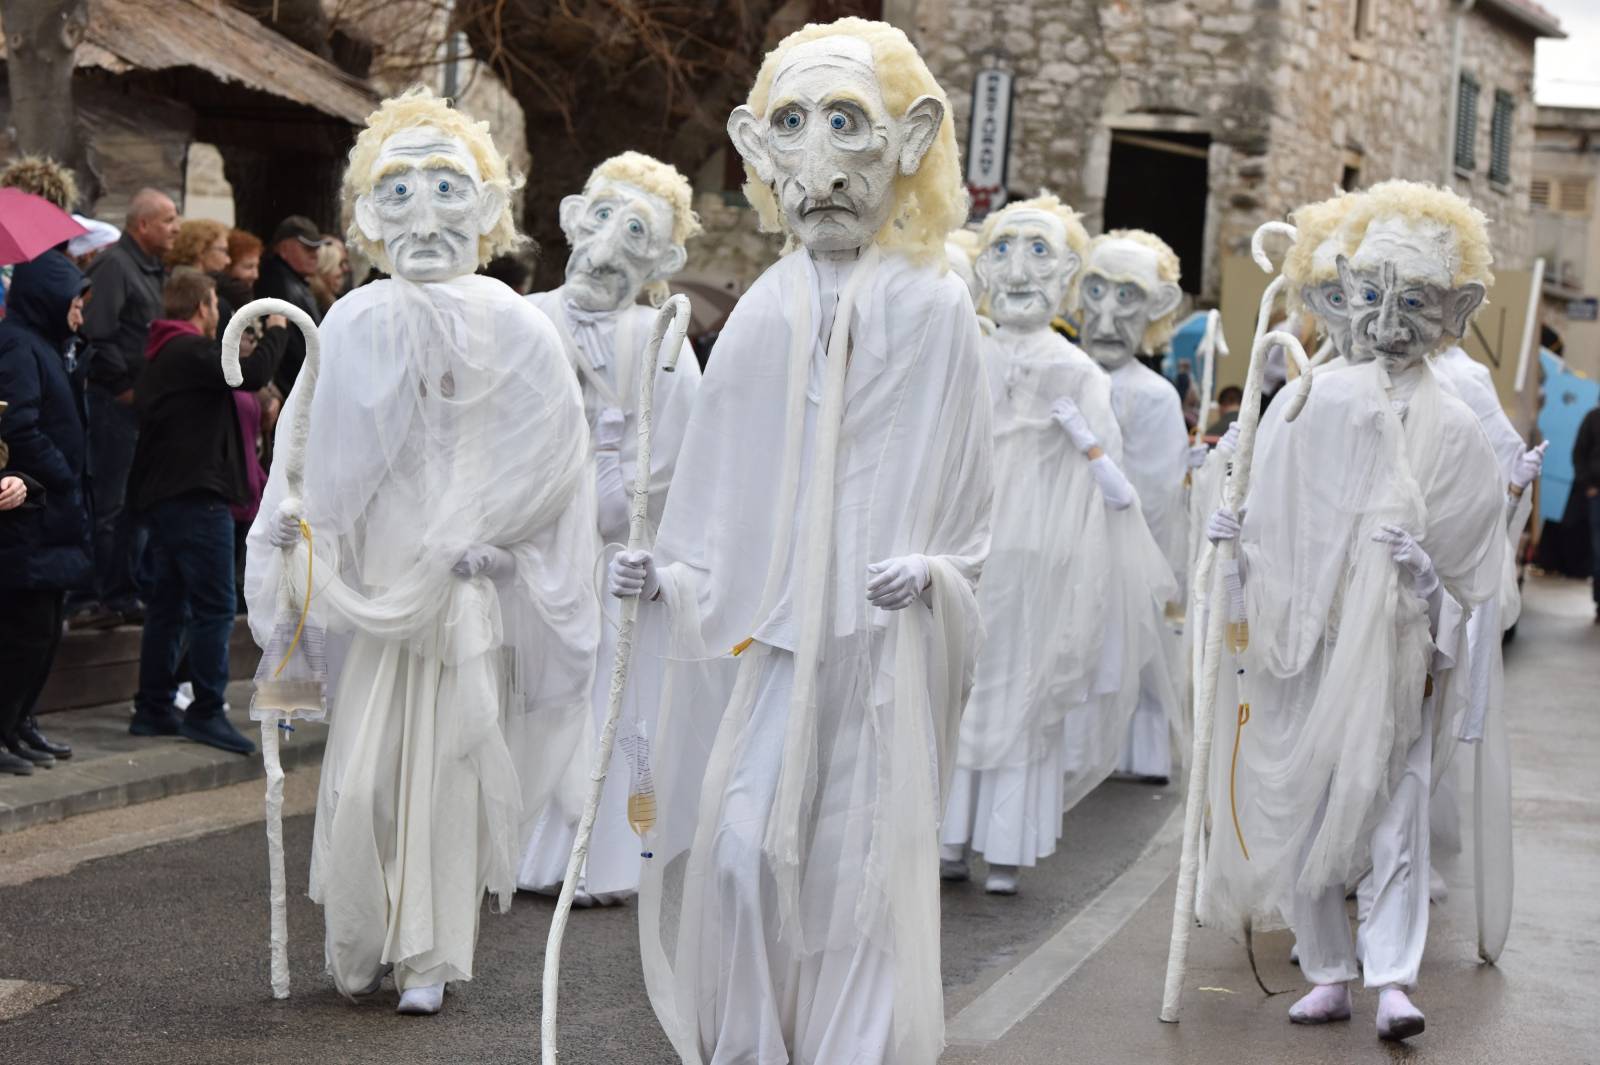 Murterske bake - povorka koja oduÅ¡evljava posjetitelje originalnim maskama i zabavom